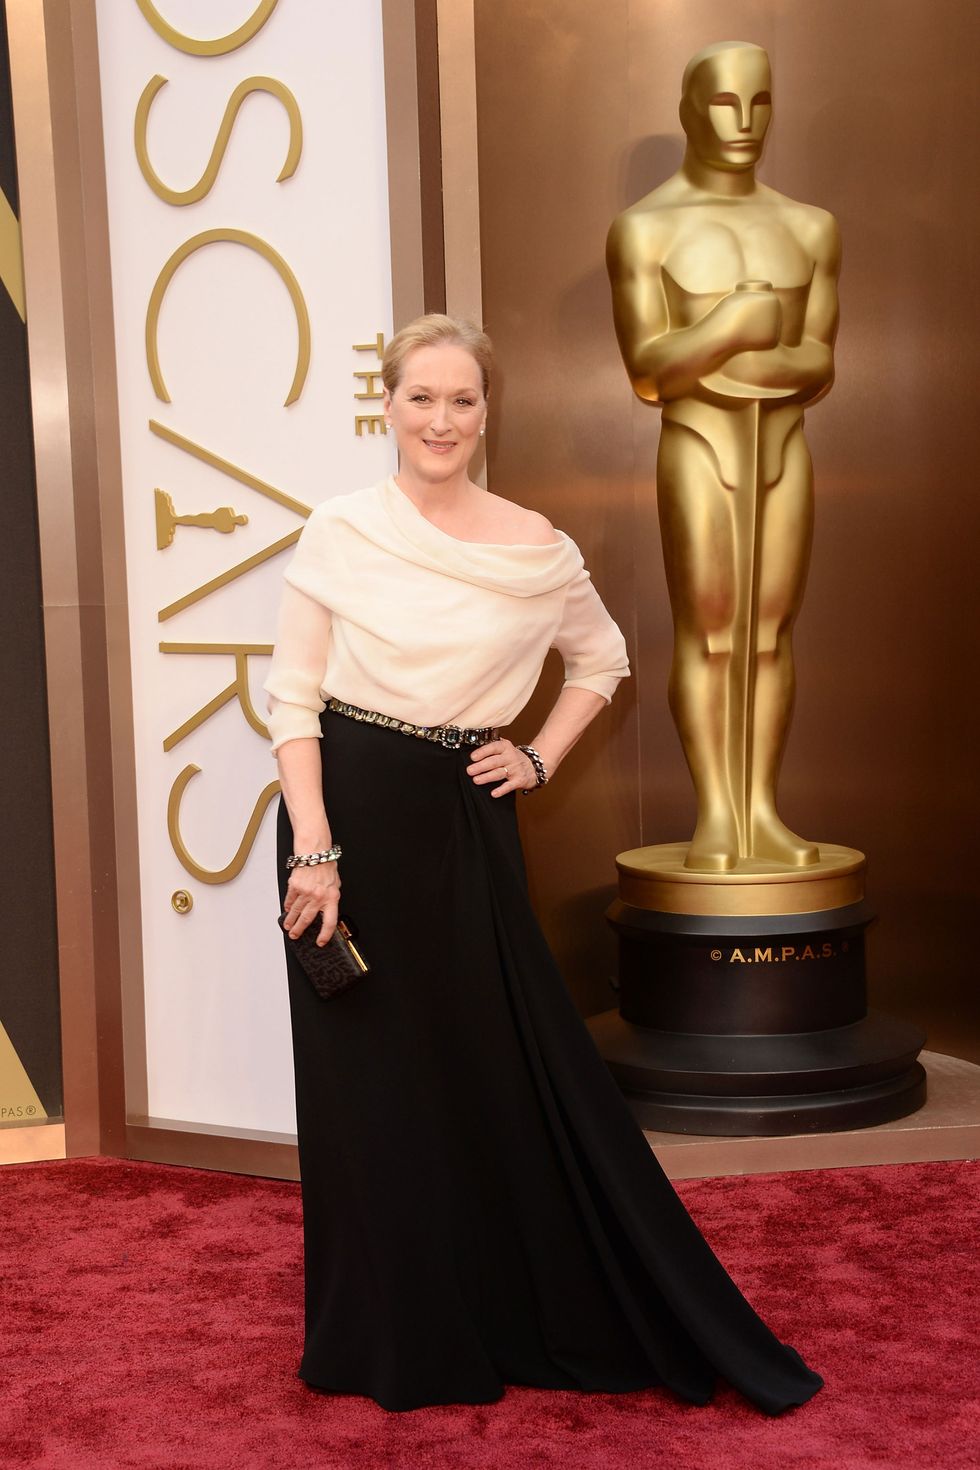 Meryl Streep at the Oscars